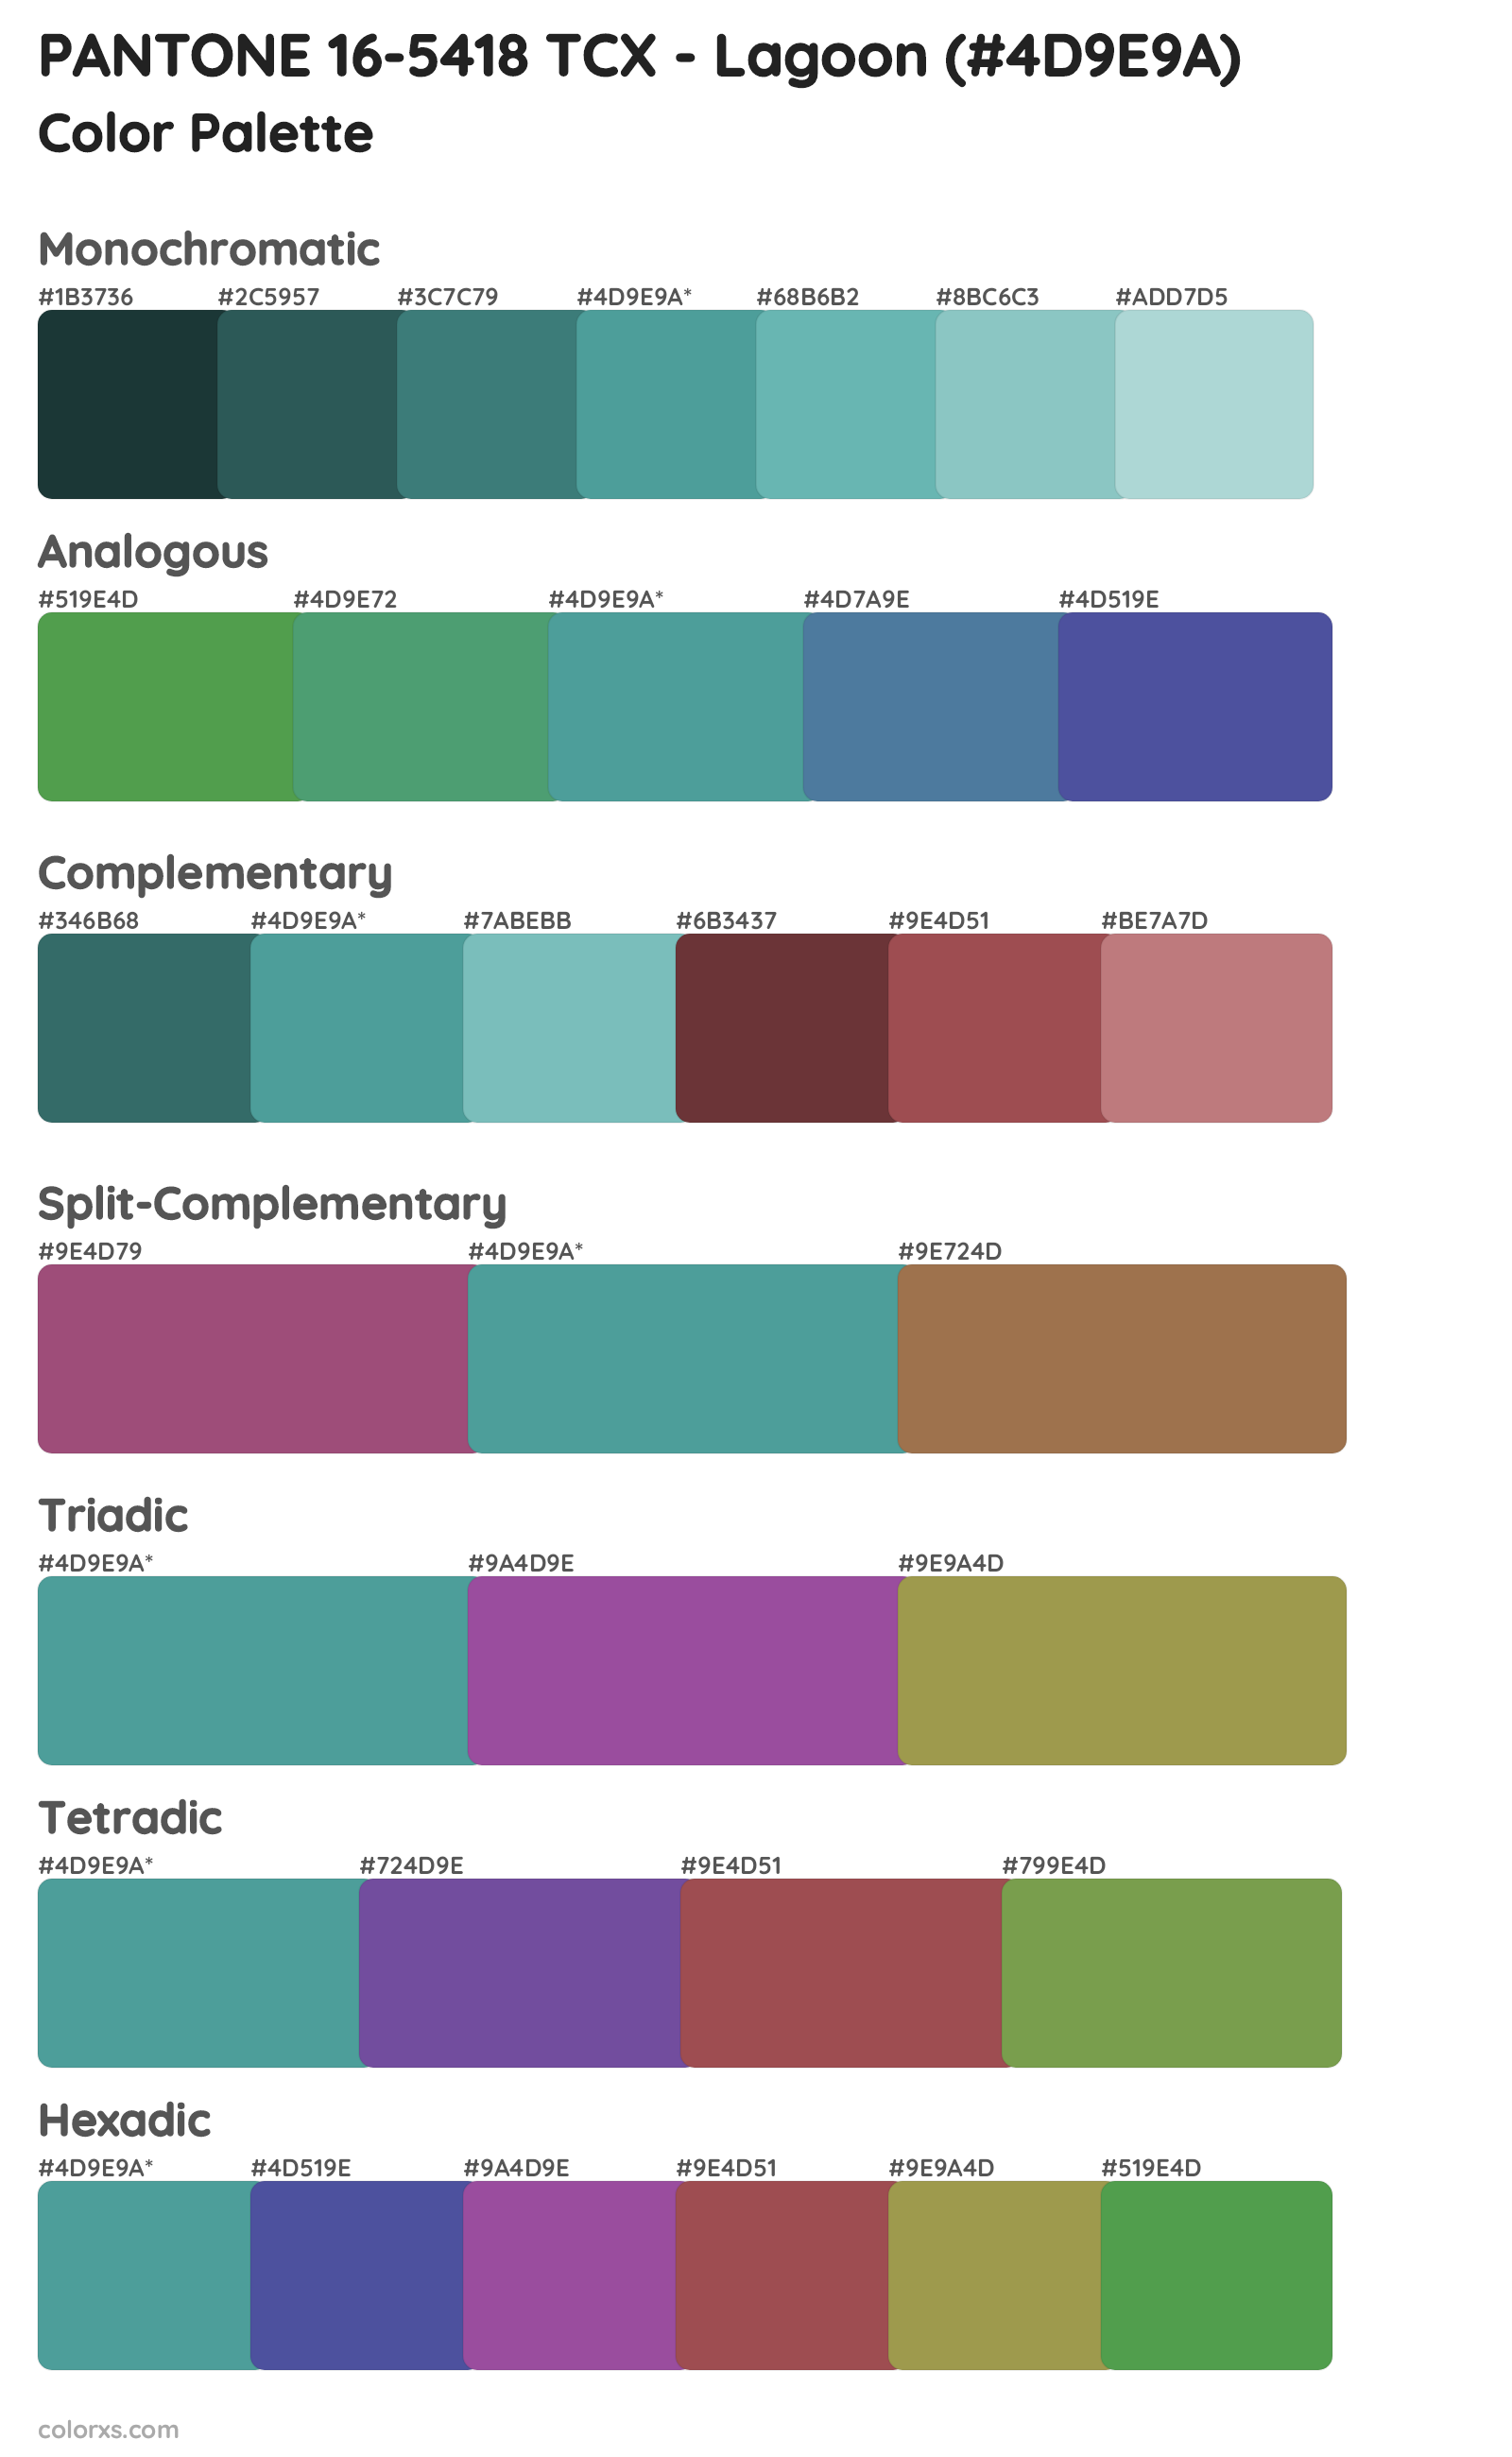 PANTONE 16-5418 TCX - Lagoon Color Scheme Palettes